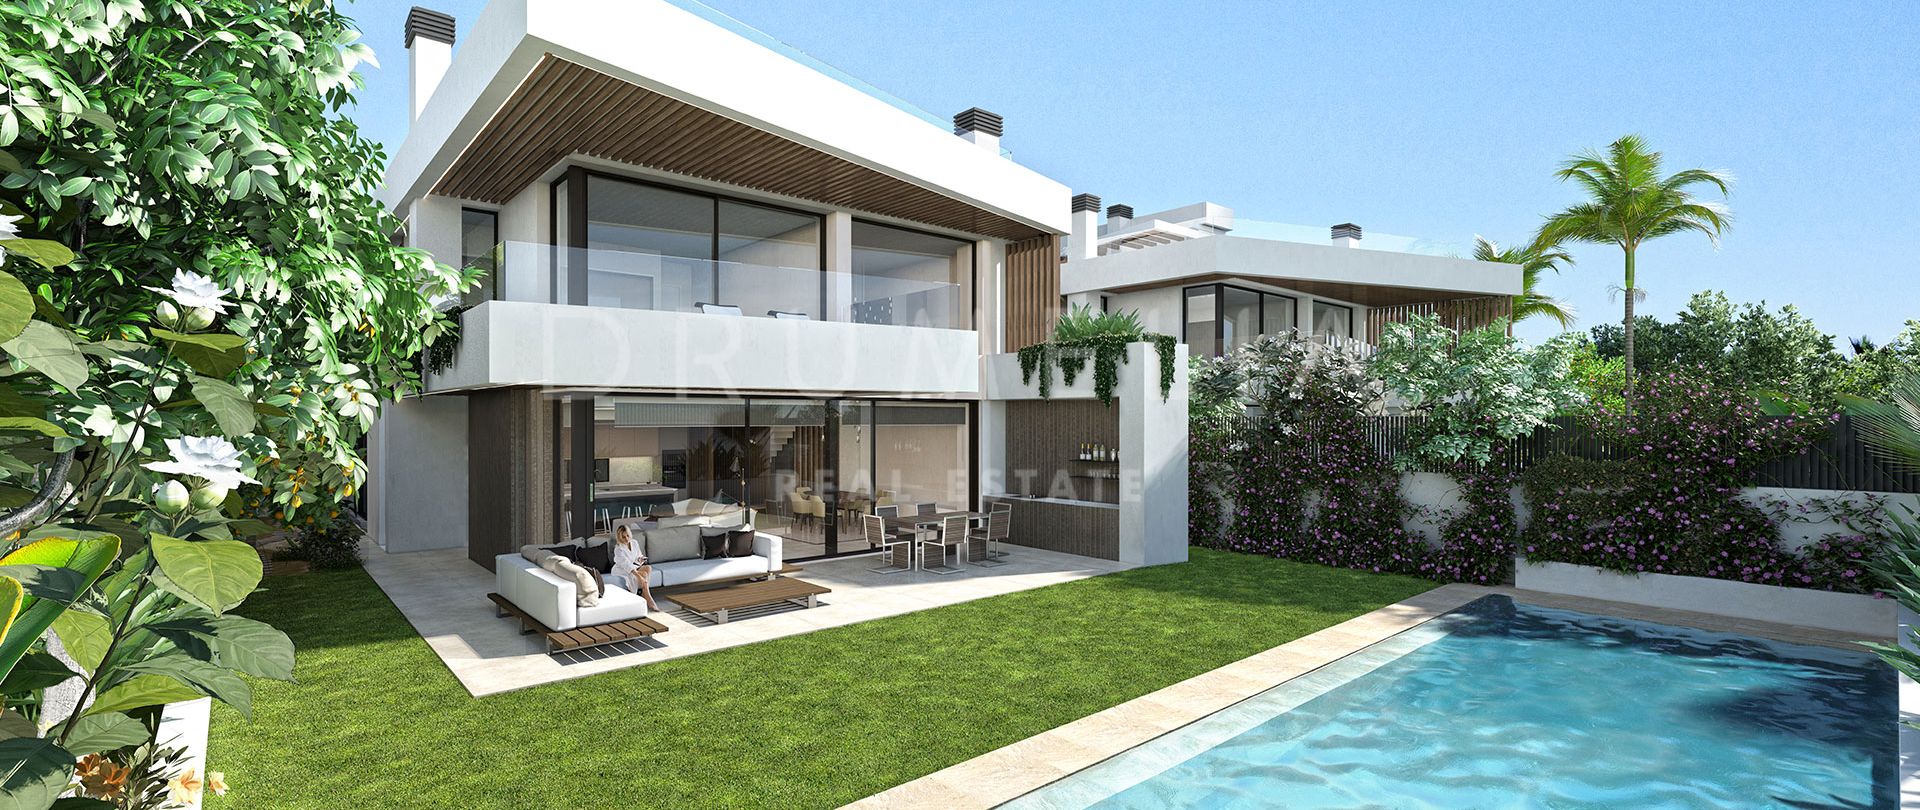 Moderno proyecto de villa de alta gama con servicios de lujo y toques vanguardistas en Puerto Banús,Marbella